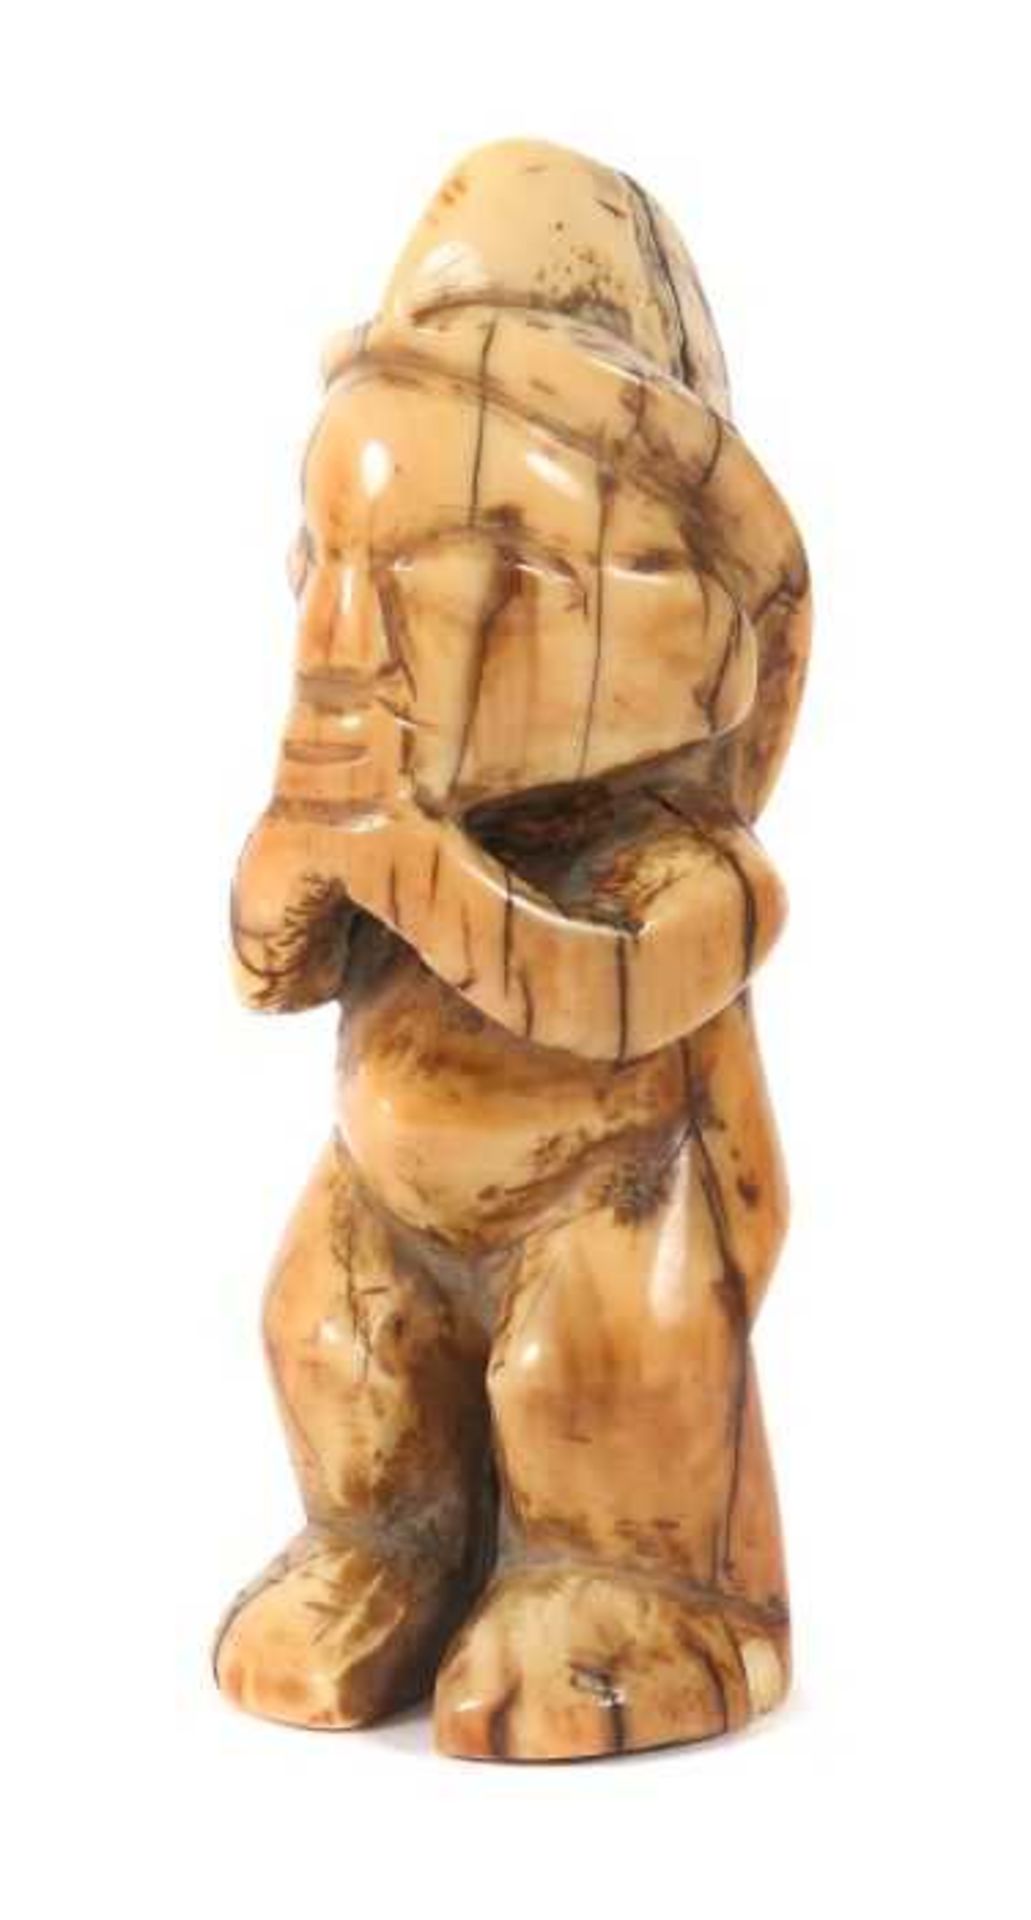 Figur DR Kongo, Stammeskunst der Mbala, Elfenbein, abstrahierte stehende männliche Figur, die